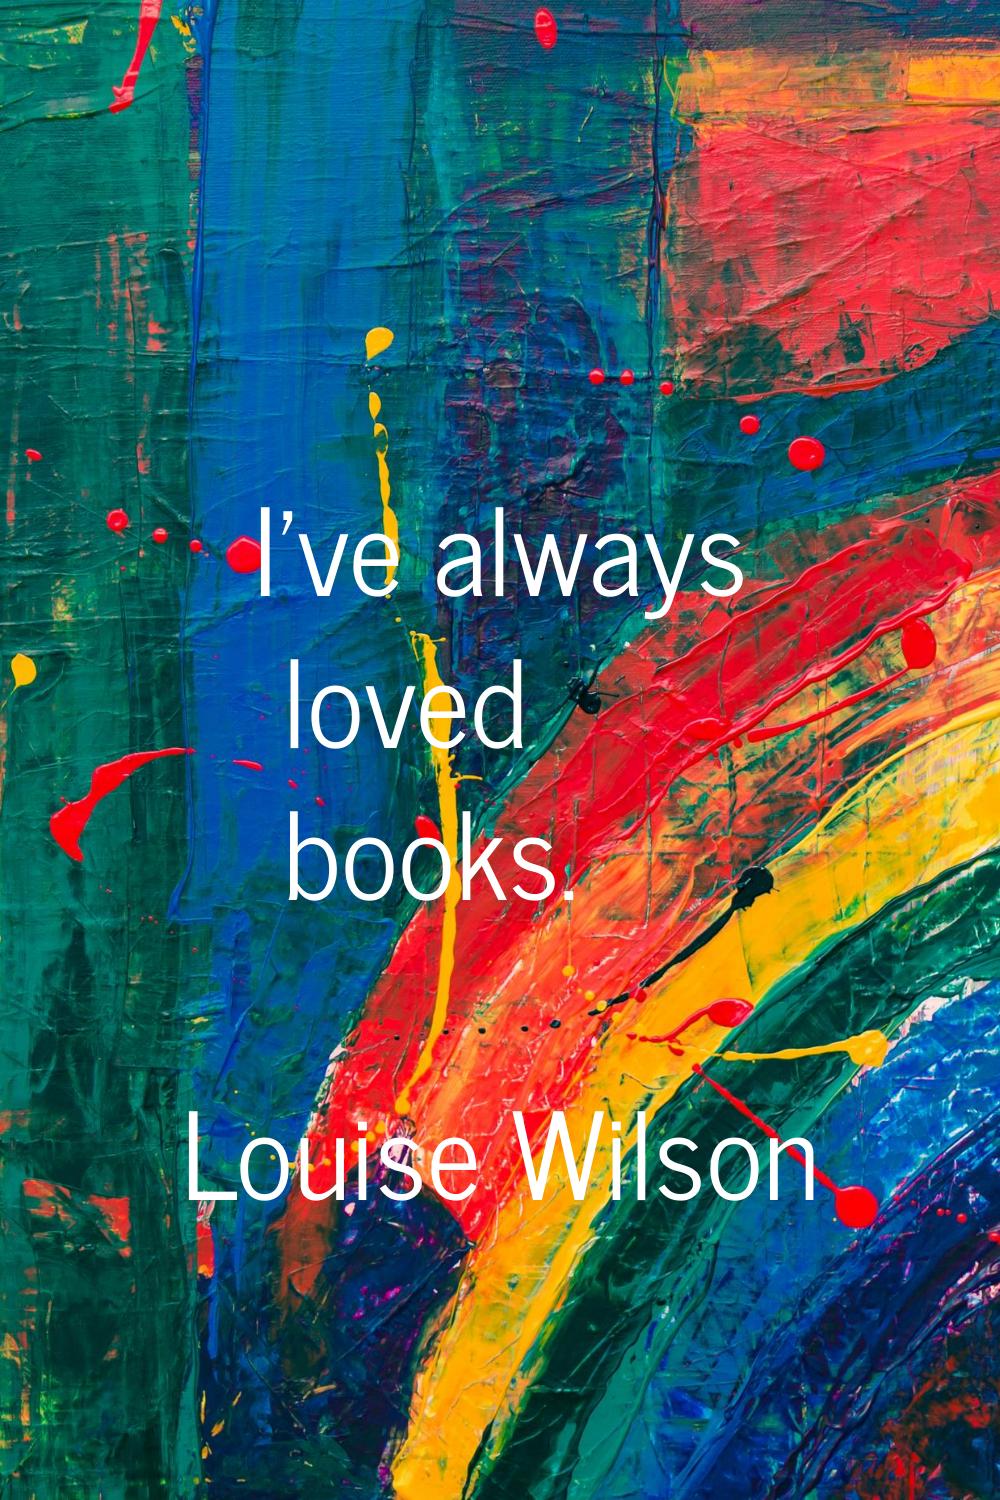 I've always loved books.